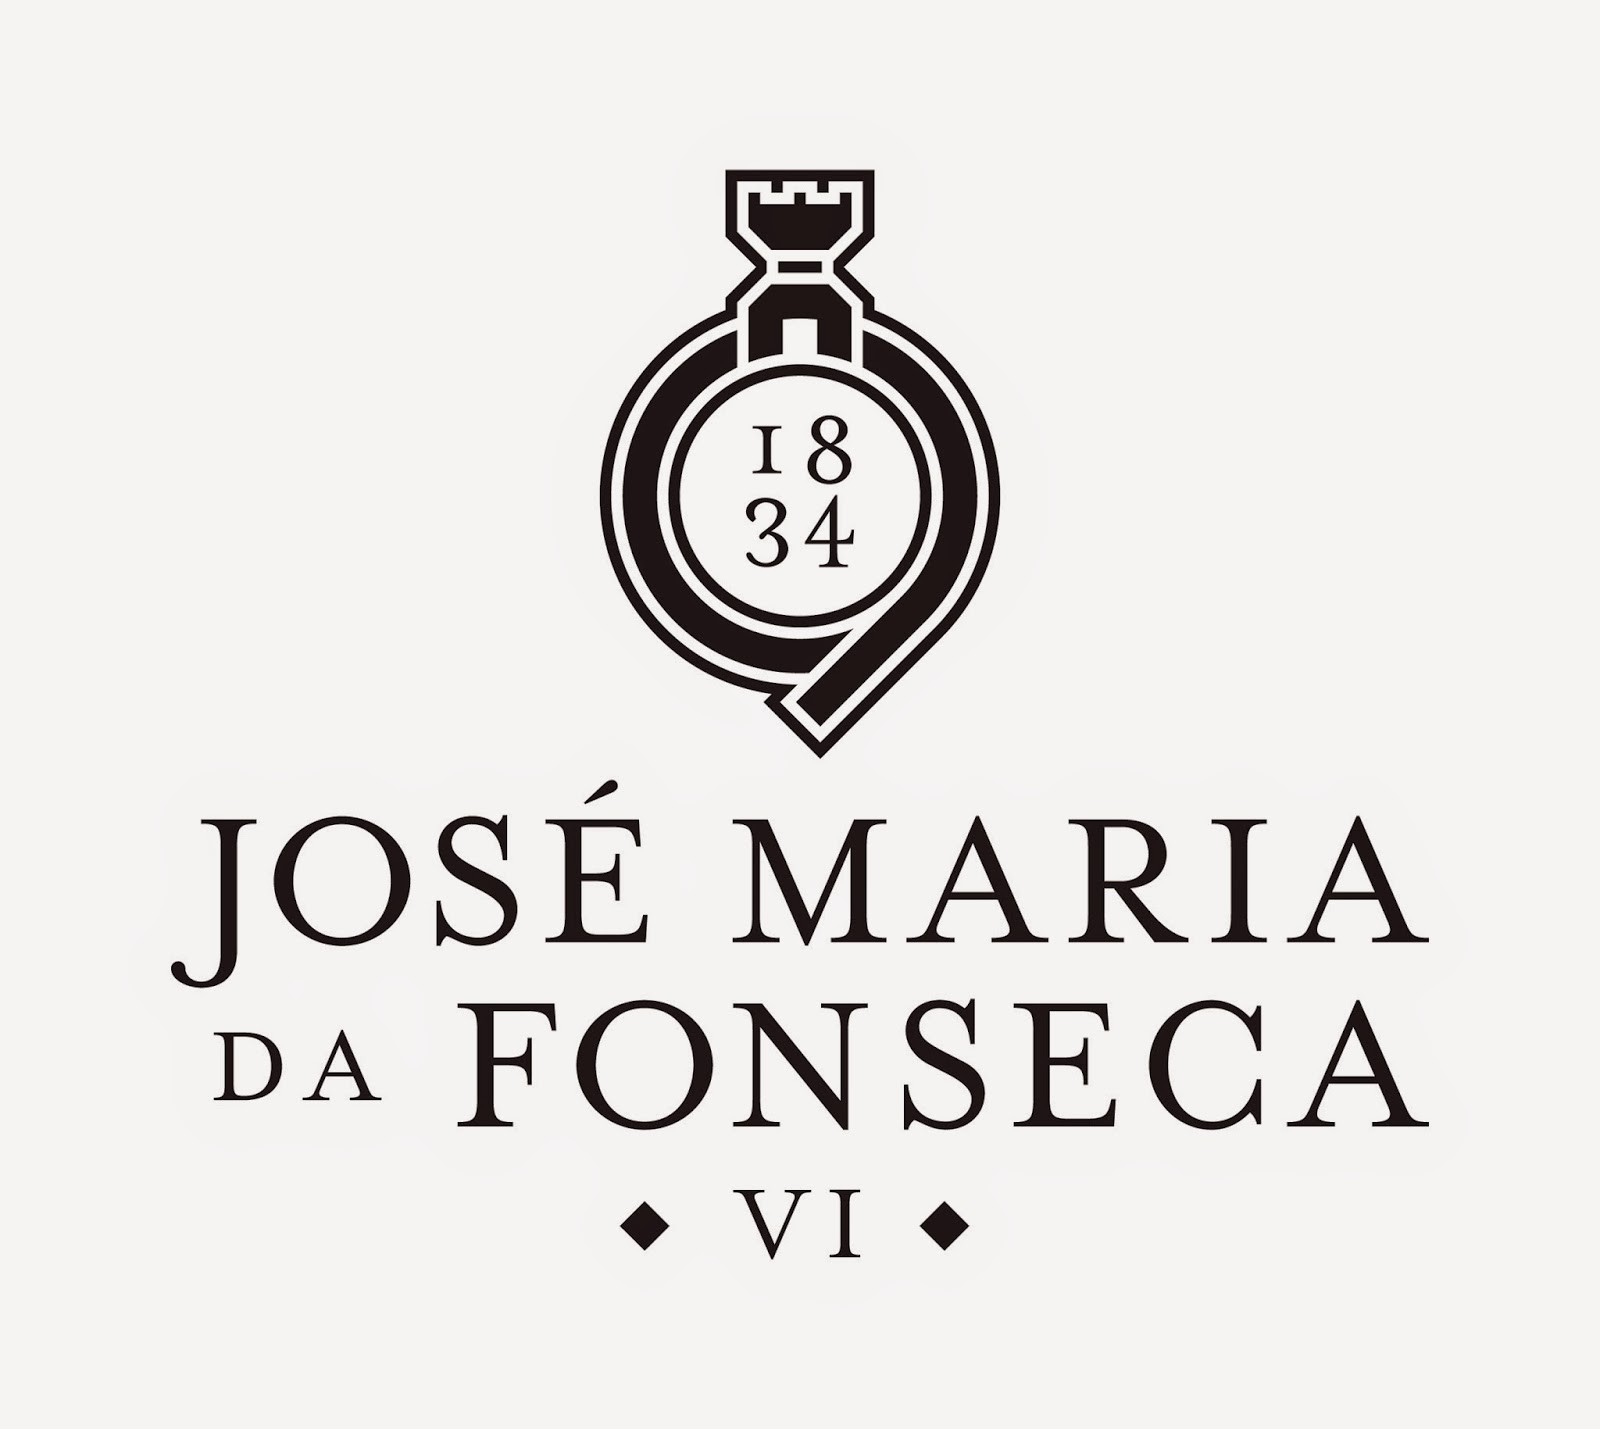 José Maria da Fonseca Vinhos SA